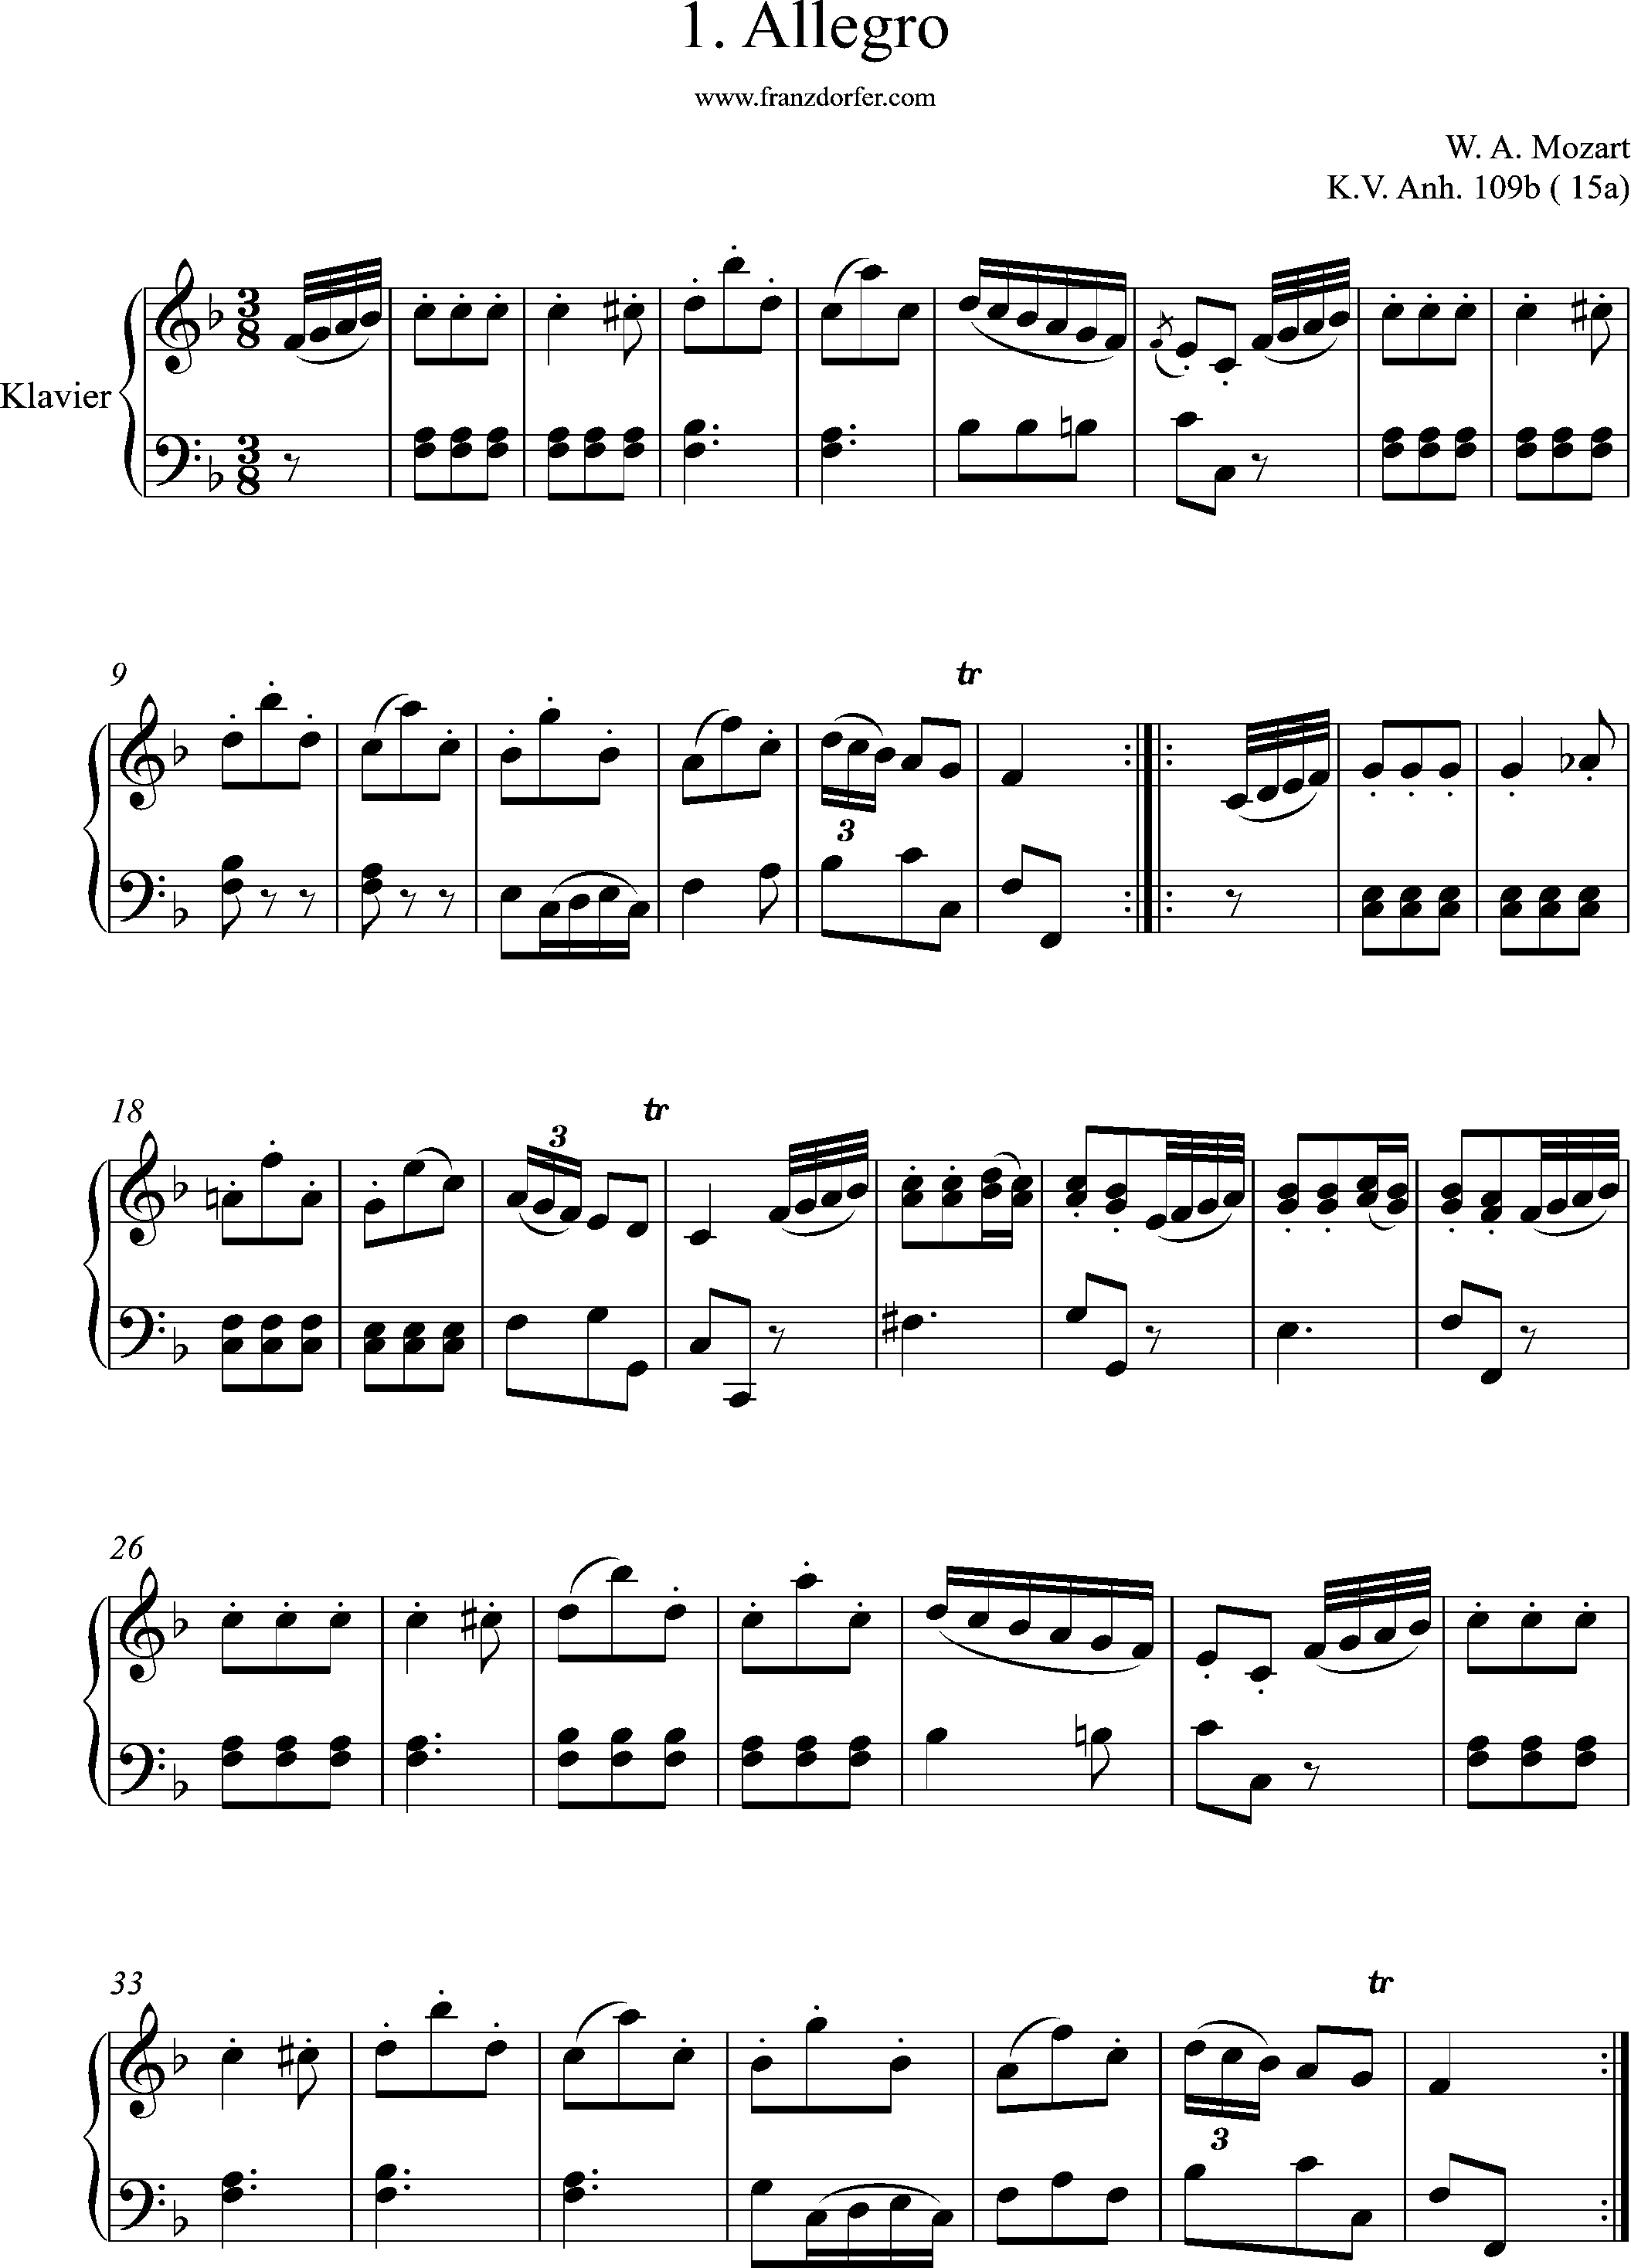 KV. Anh. 109b, 15a, No1, Allegro, W. a. Mozart